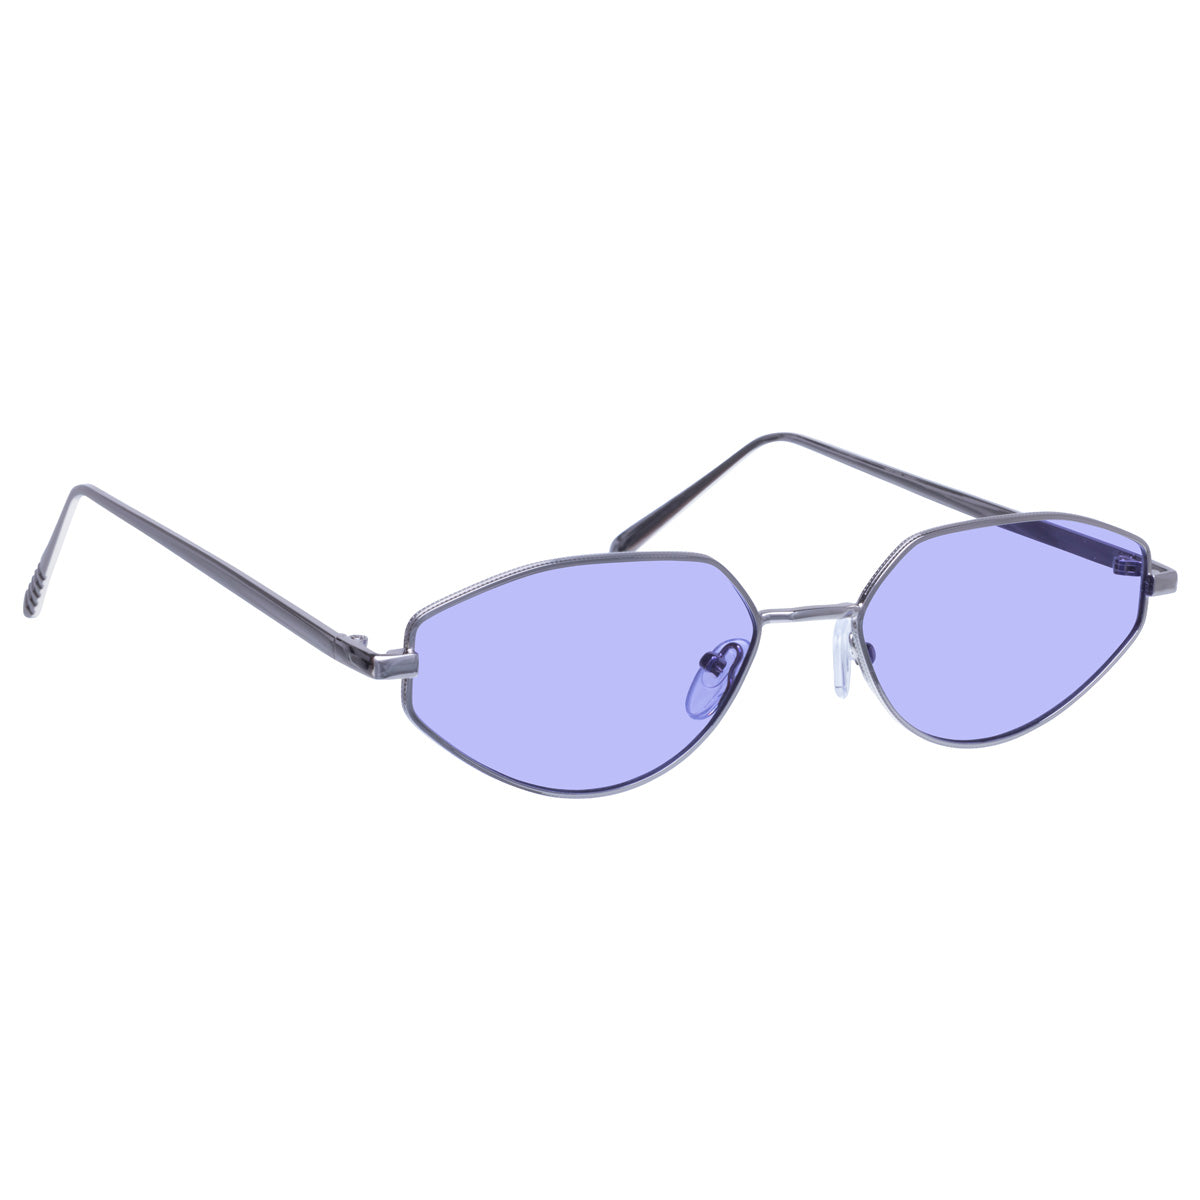 Vinkelformade ovala solglasögon med metallbåge